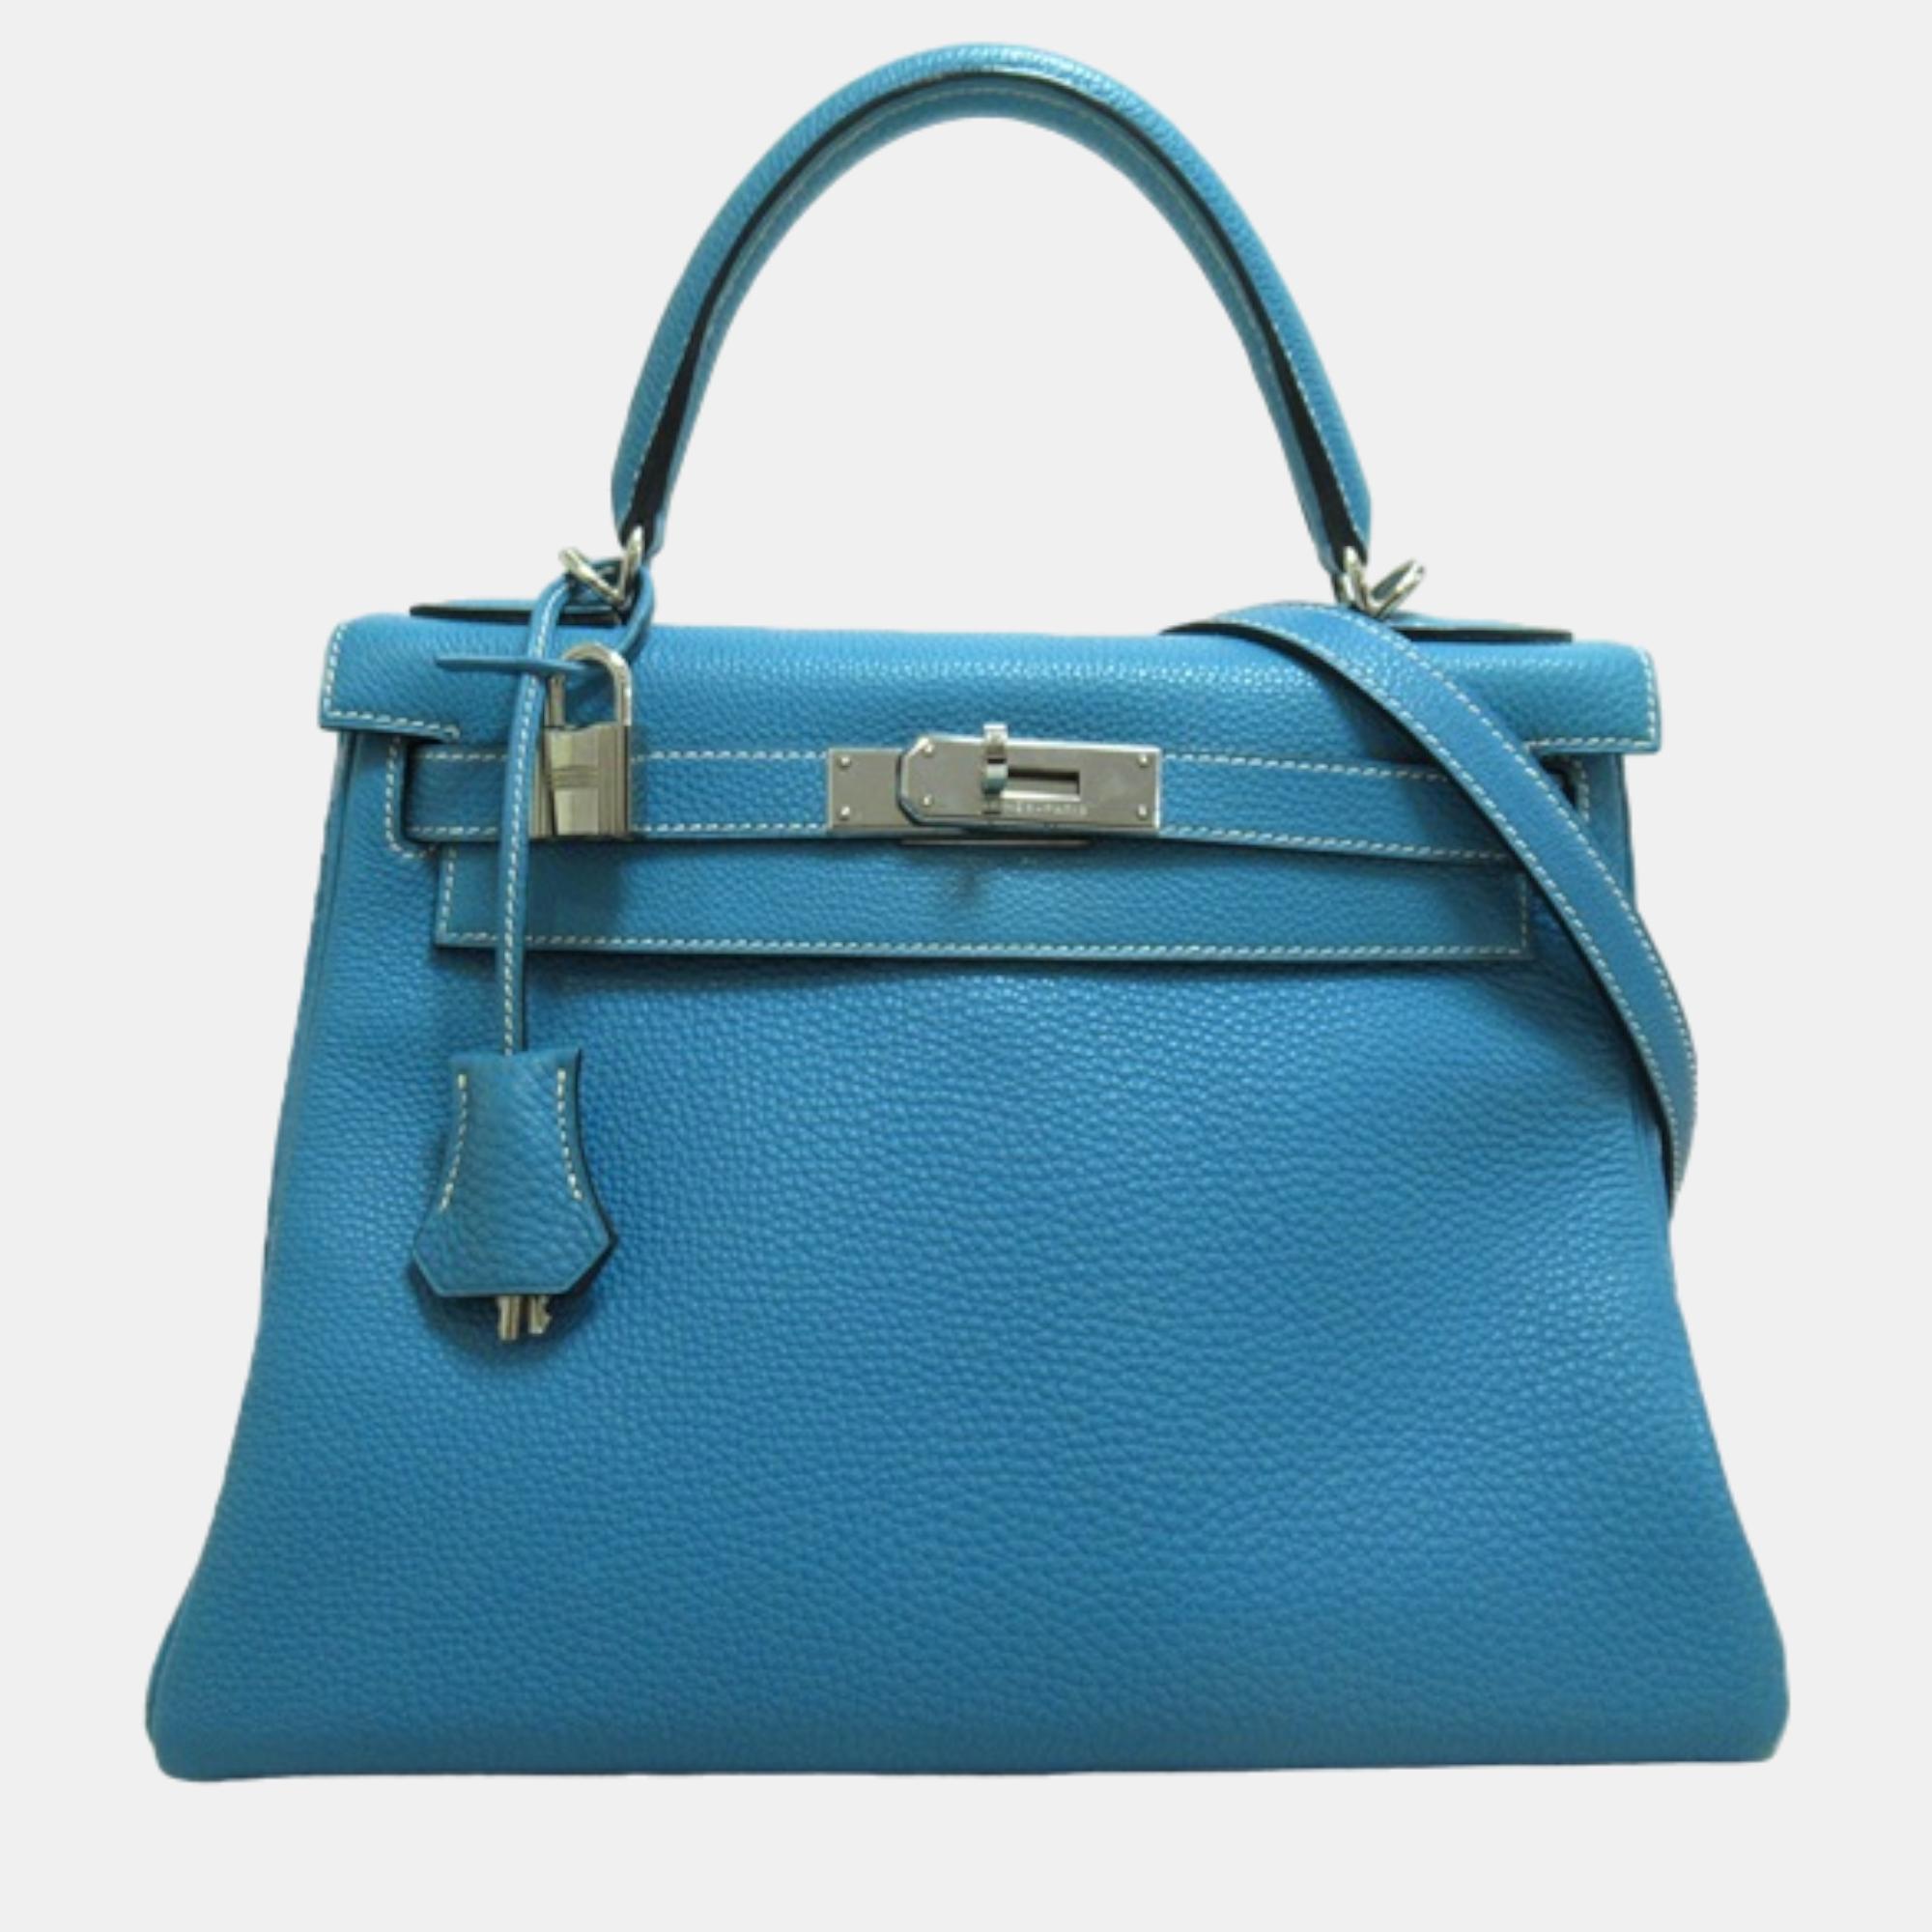 

Hermes Blue Leather Togo Kelly 28 bag